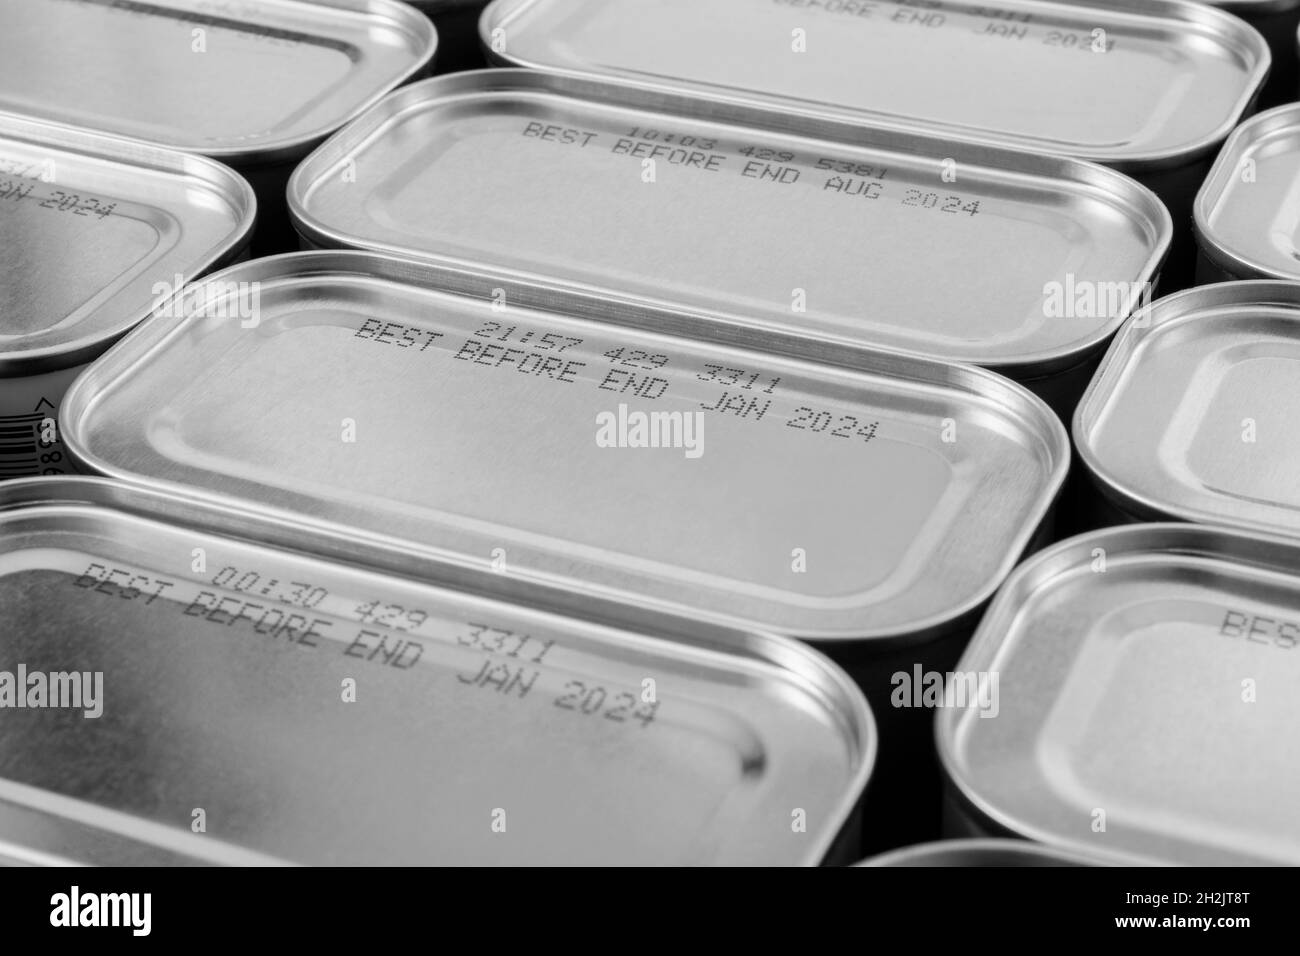 Einfarbige abstrakte Blechdosen aus Metall mit Teil des Lebensmittels „Best Before Date“. Für die Erhaltung von Lebensmitteln, pandemische Lebensmittelknappheit in Großbritannien, Lockdown-Horten. Stockfoto